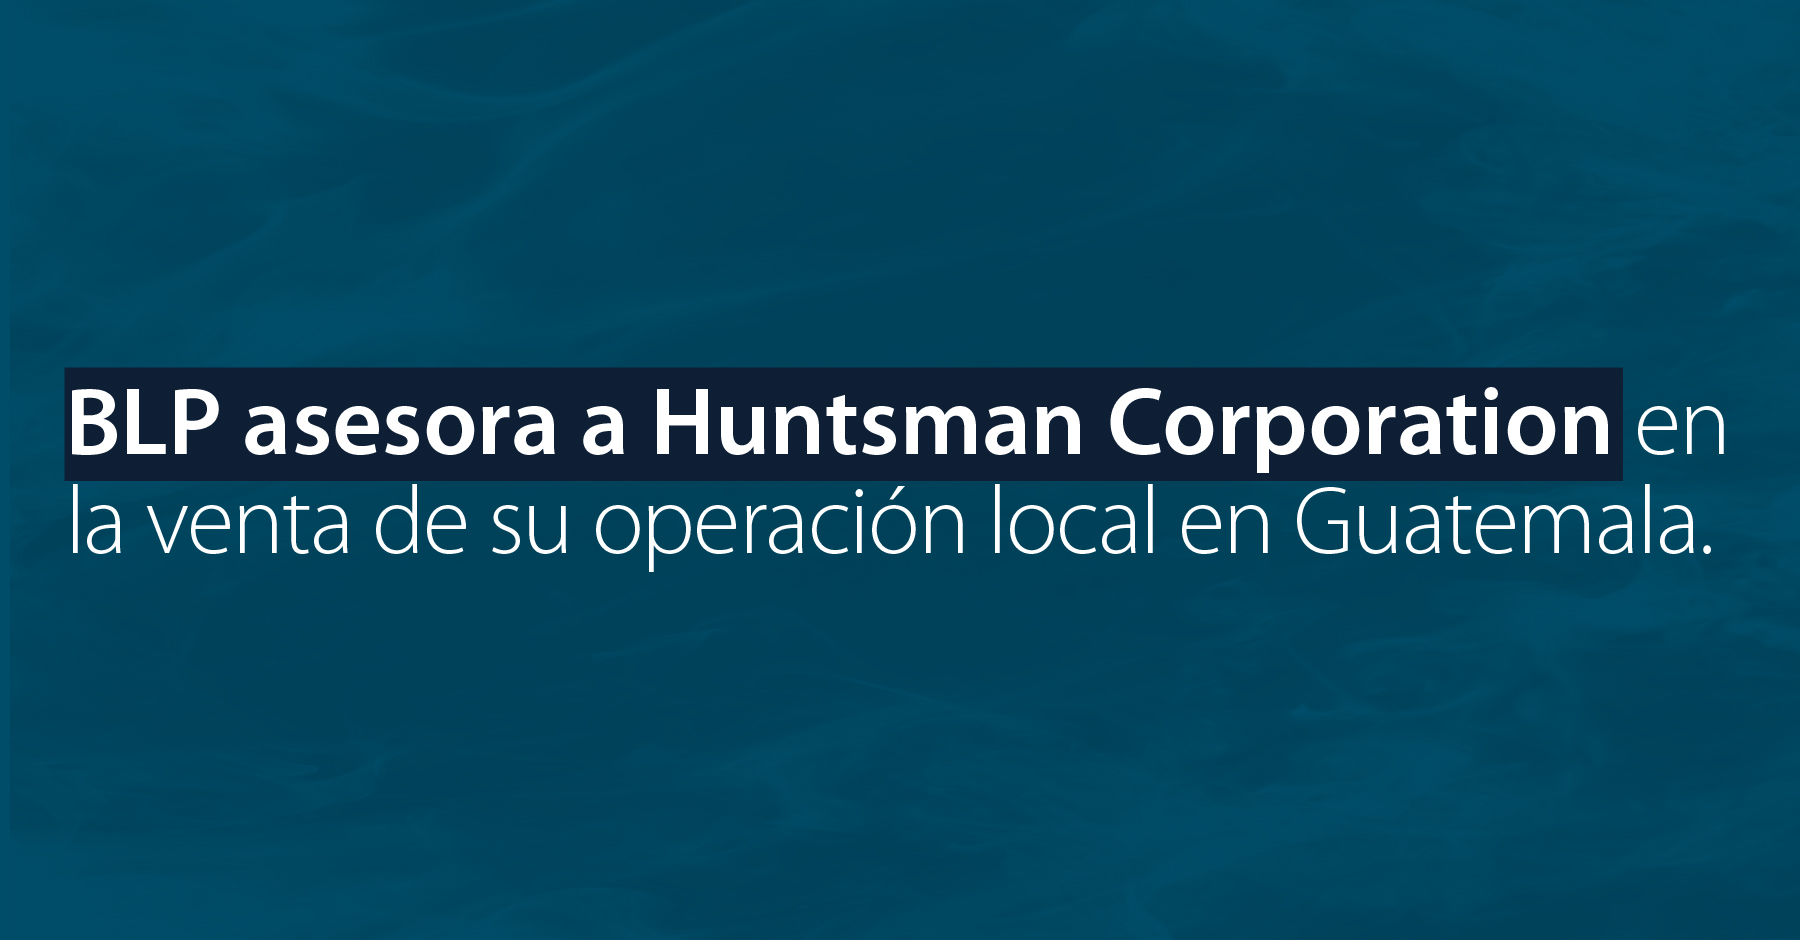 BLP asesora a Huntsman Corporation en la venta de su operación en Guatemala